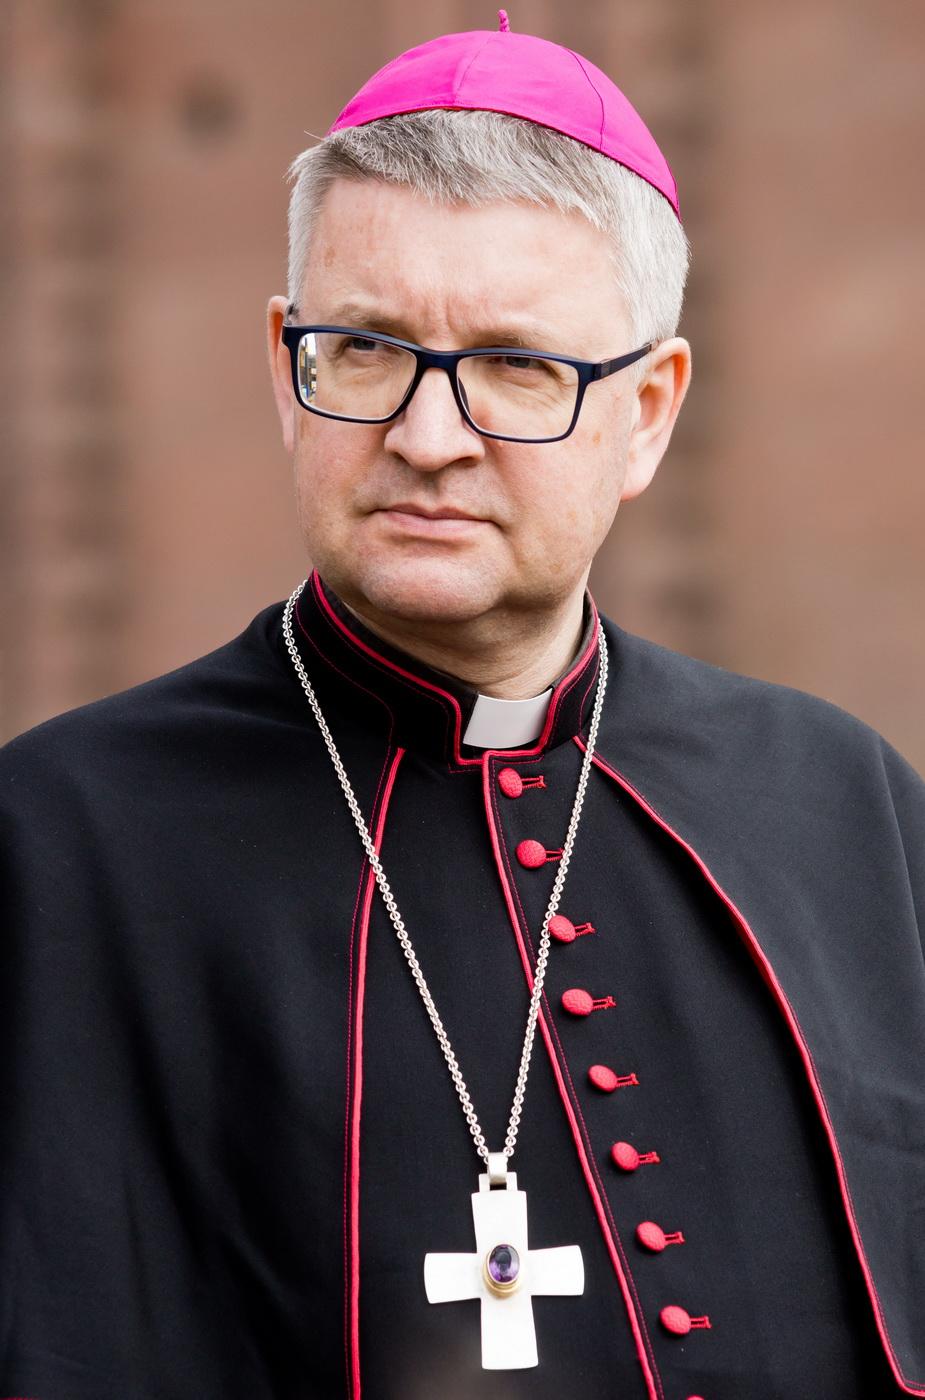 Bischof Peter Kohlgraf (c) Norbert Rau